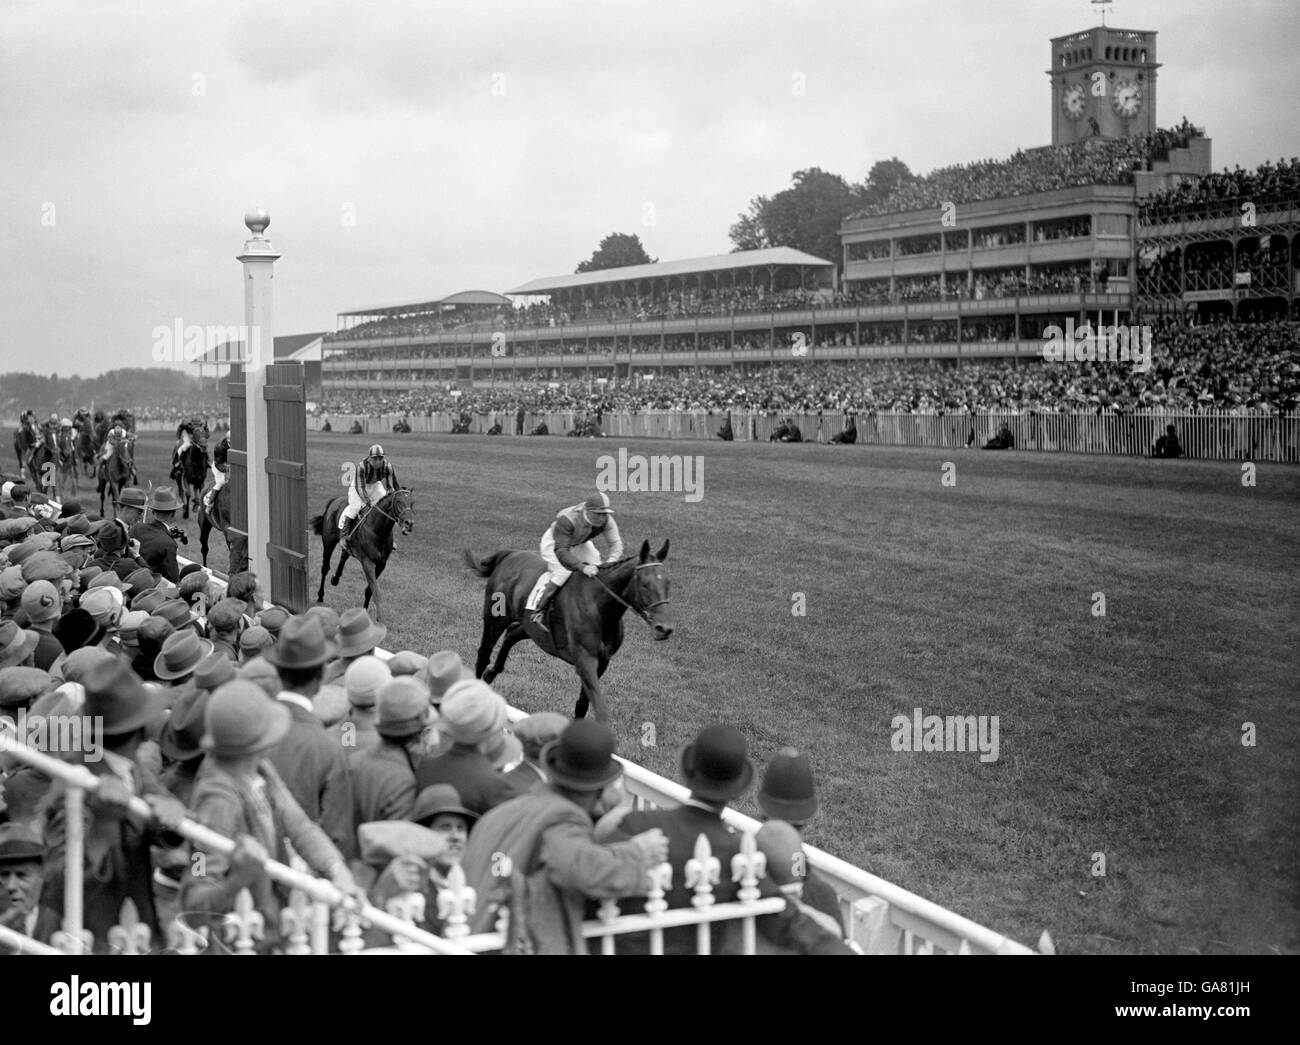 Horseracing - Royal Ascot 1928 Stock Photo